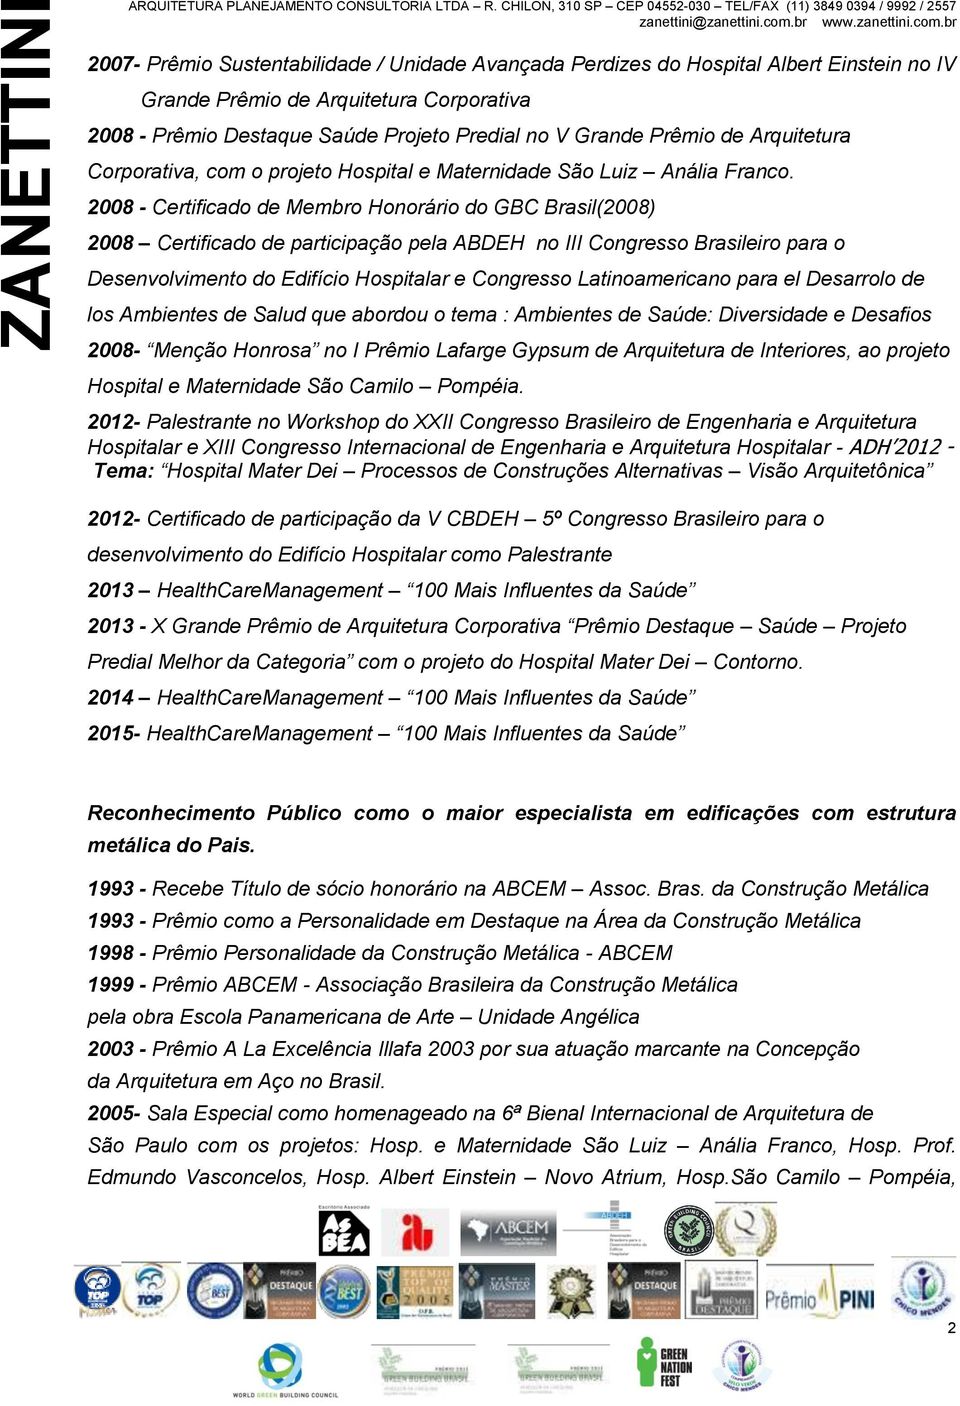 2008 - Certificado de Membro Honorário do GBC Brasil(2008) 2008 Certificado de participação pela ABDEH no III Congresso Brasileiro para o Desenvolvimento do Edifício Hospitalar e Congresso